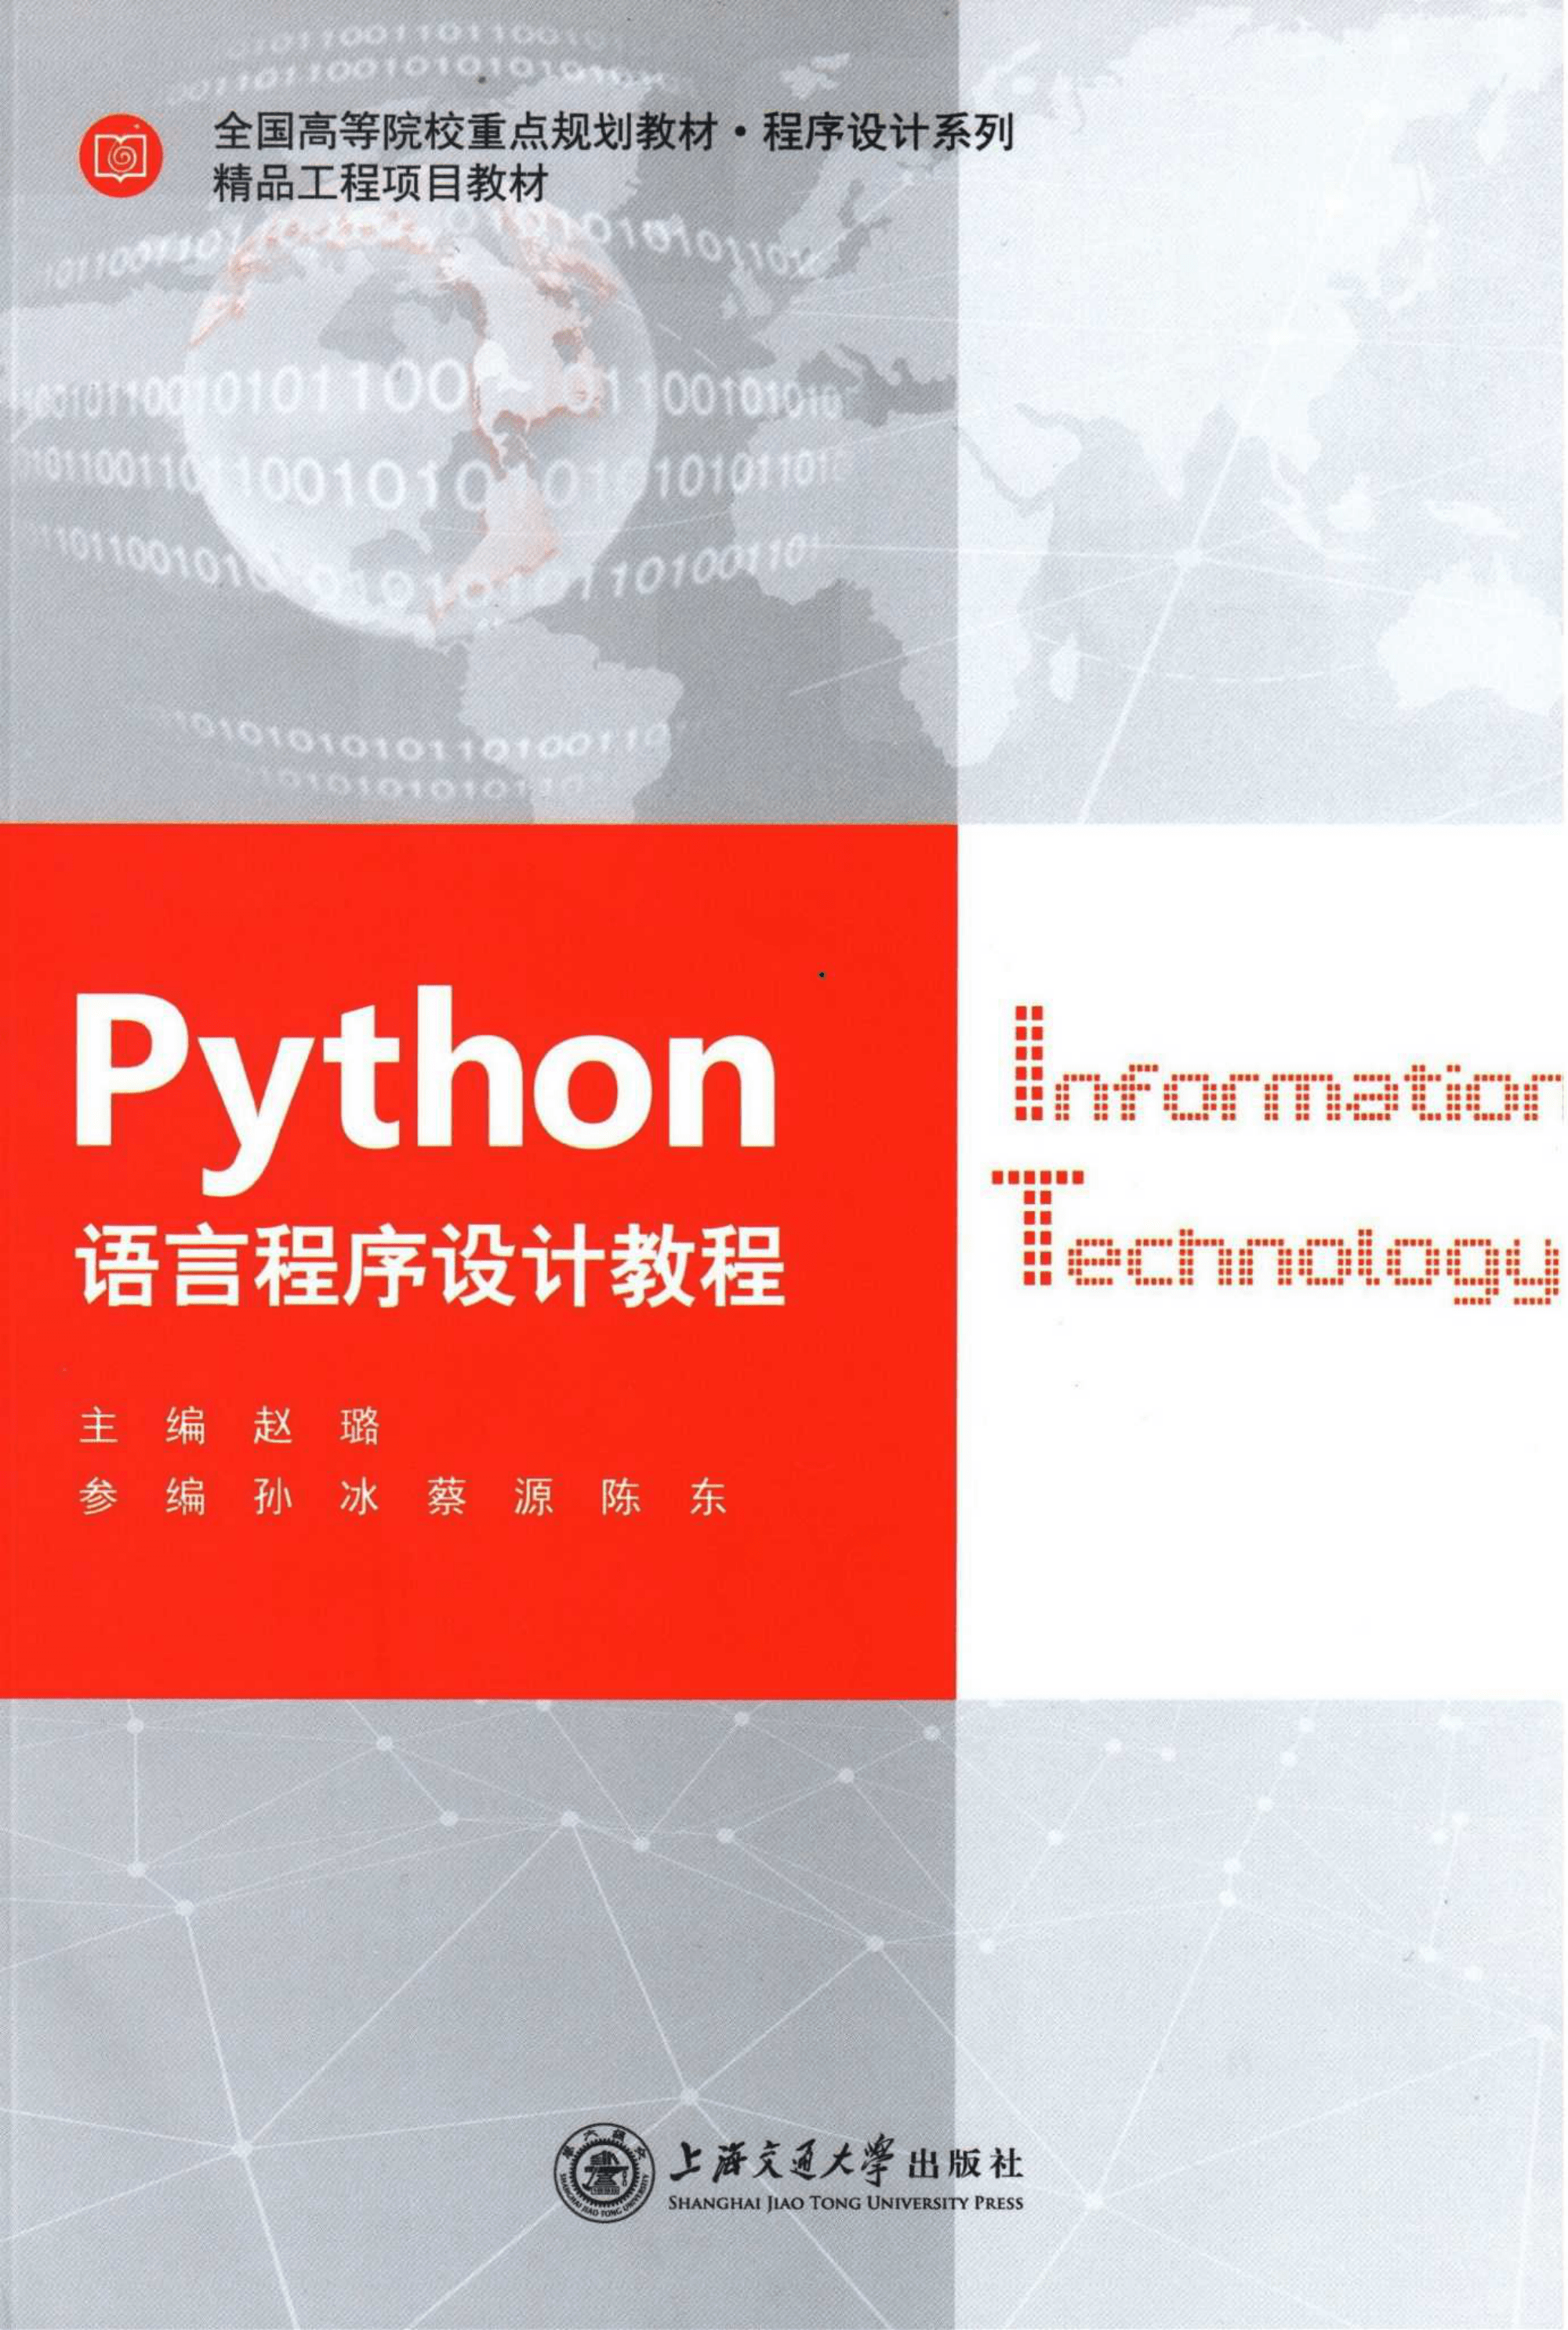 python视频教程_视频教程完整版免费观看_视频教程自学